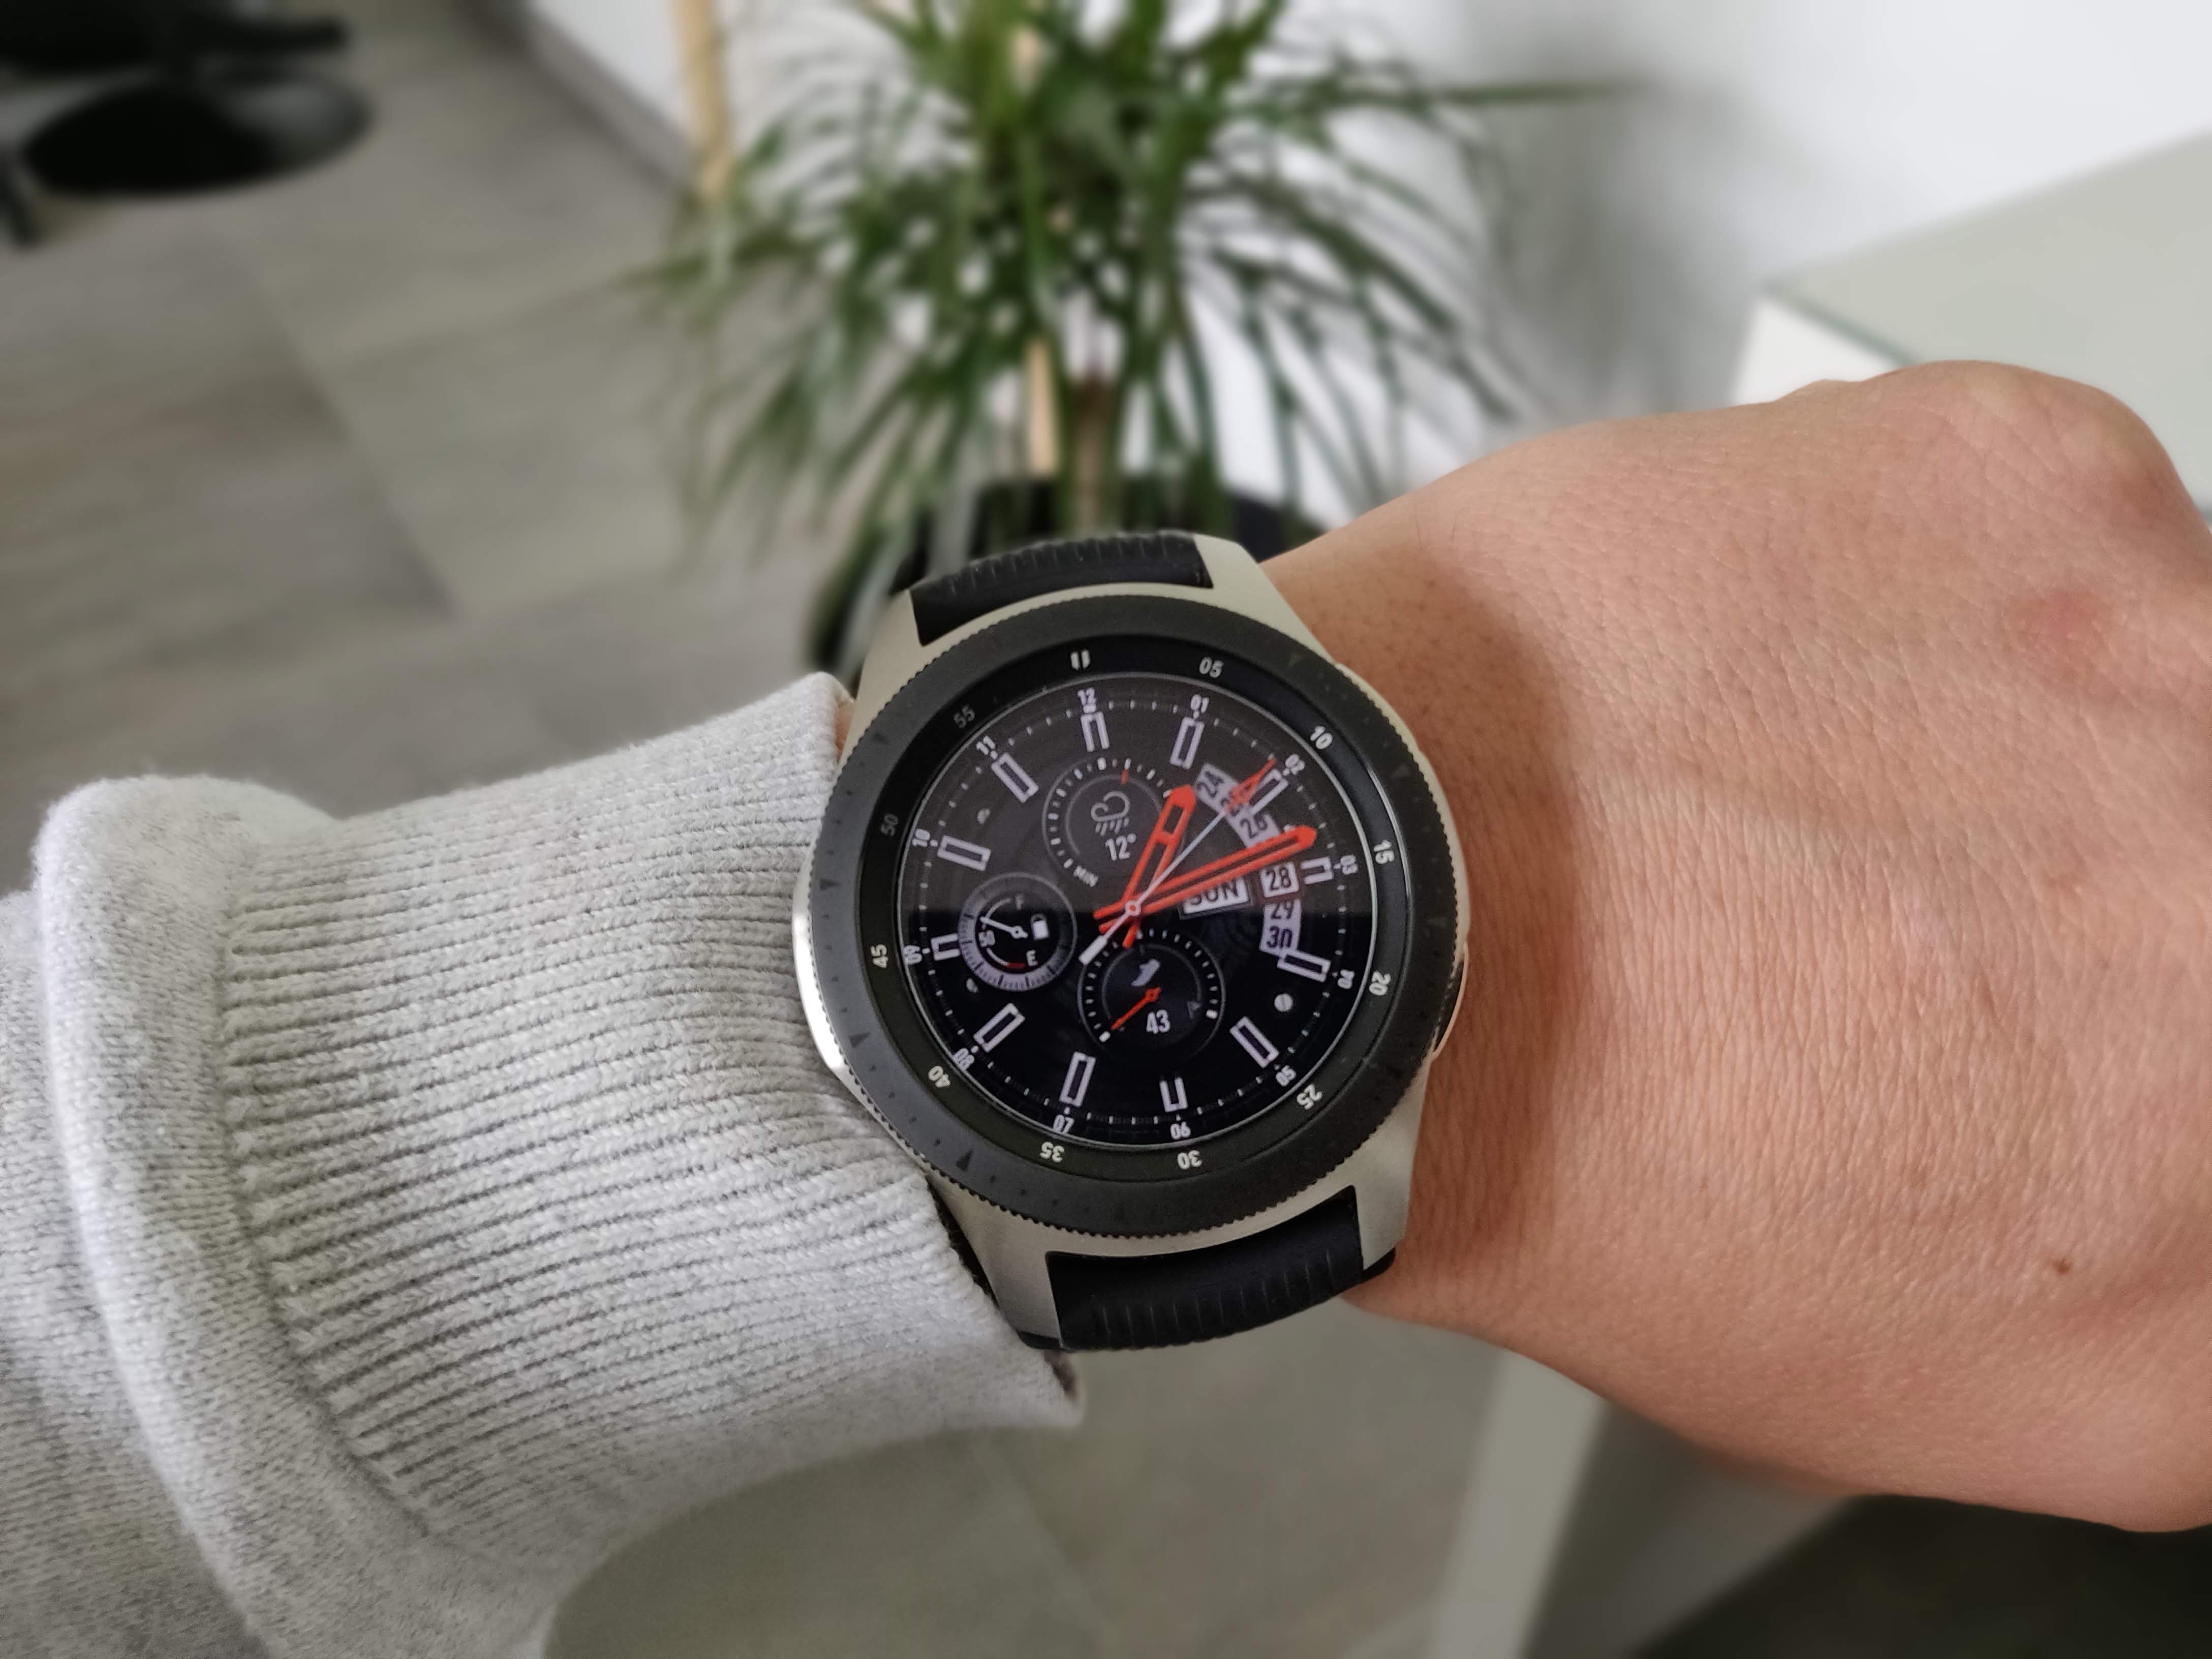 Samsung - Galaxy Watch - 46 mm - Gris Acier - Montre connectée